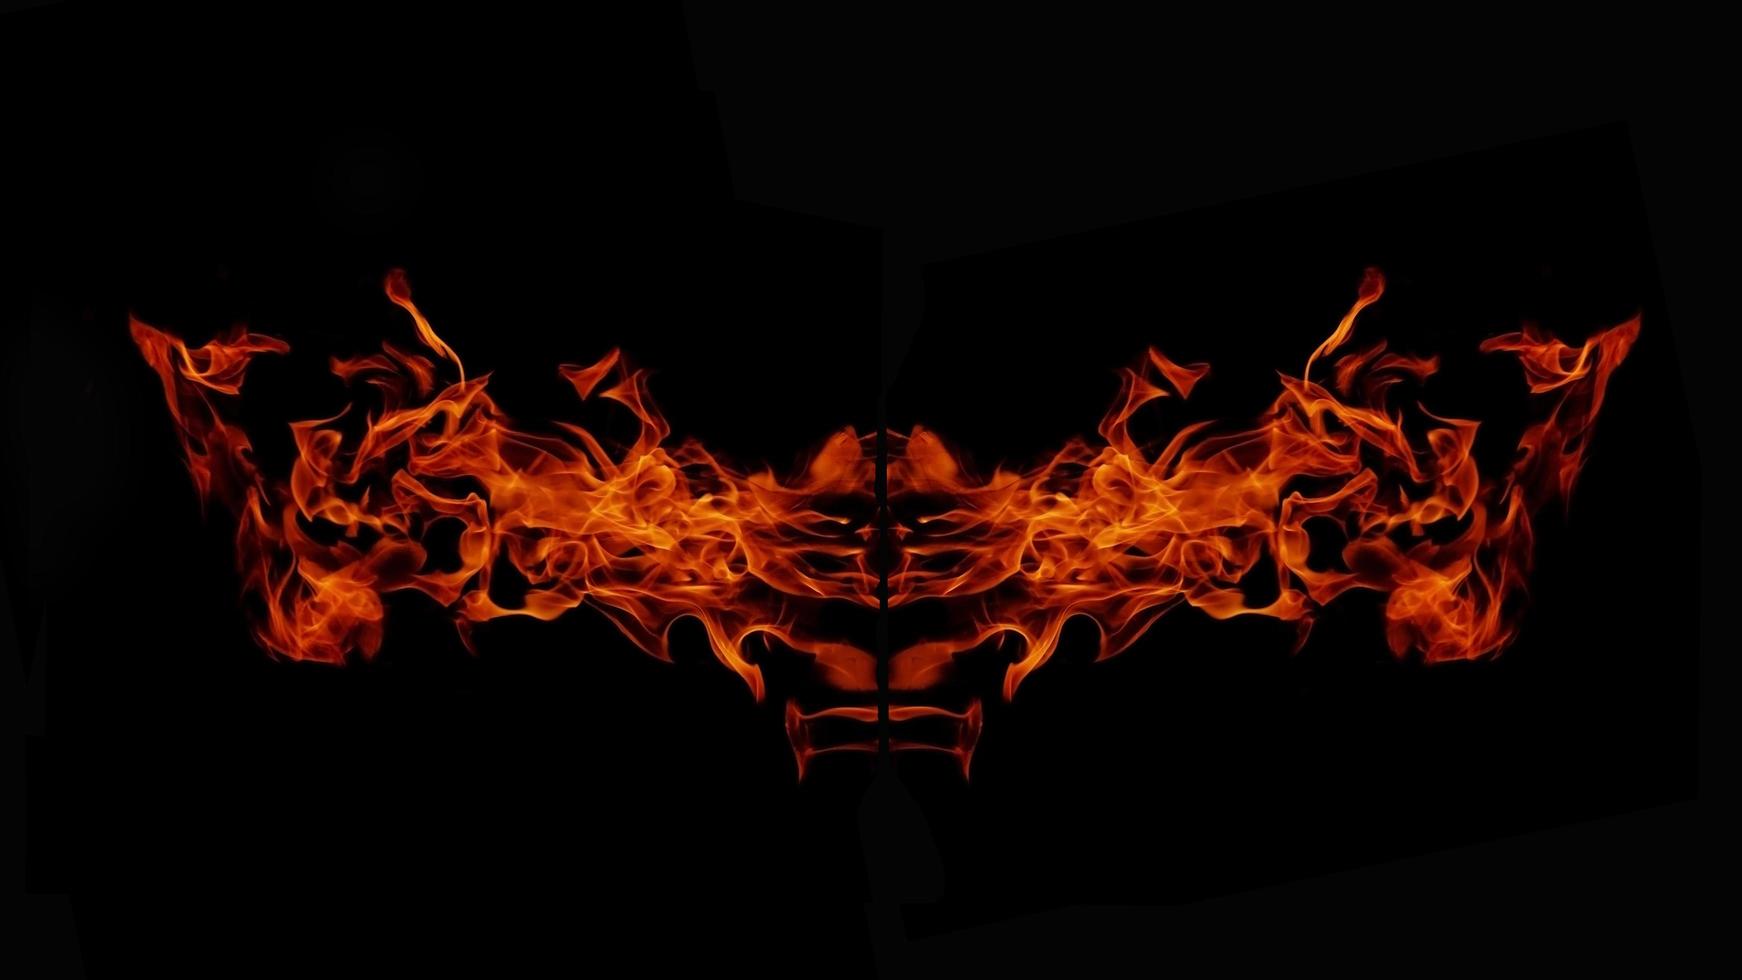 uma bela chama em forma como imaginada. como do inferno, mostrando um fervor perigoso e ardente, fundo preto foto